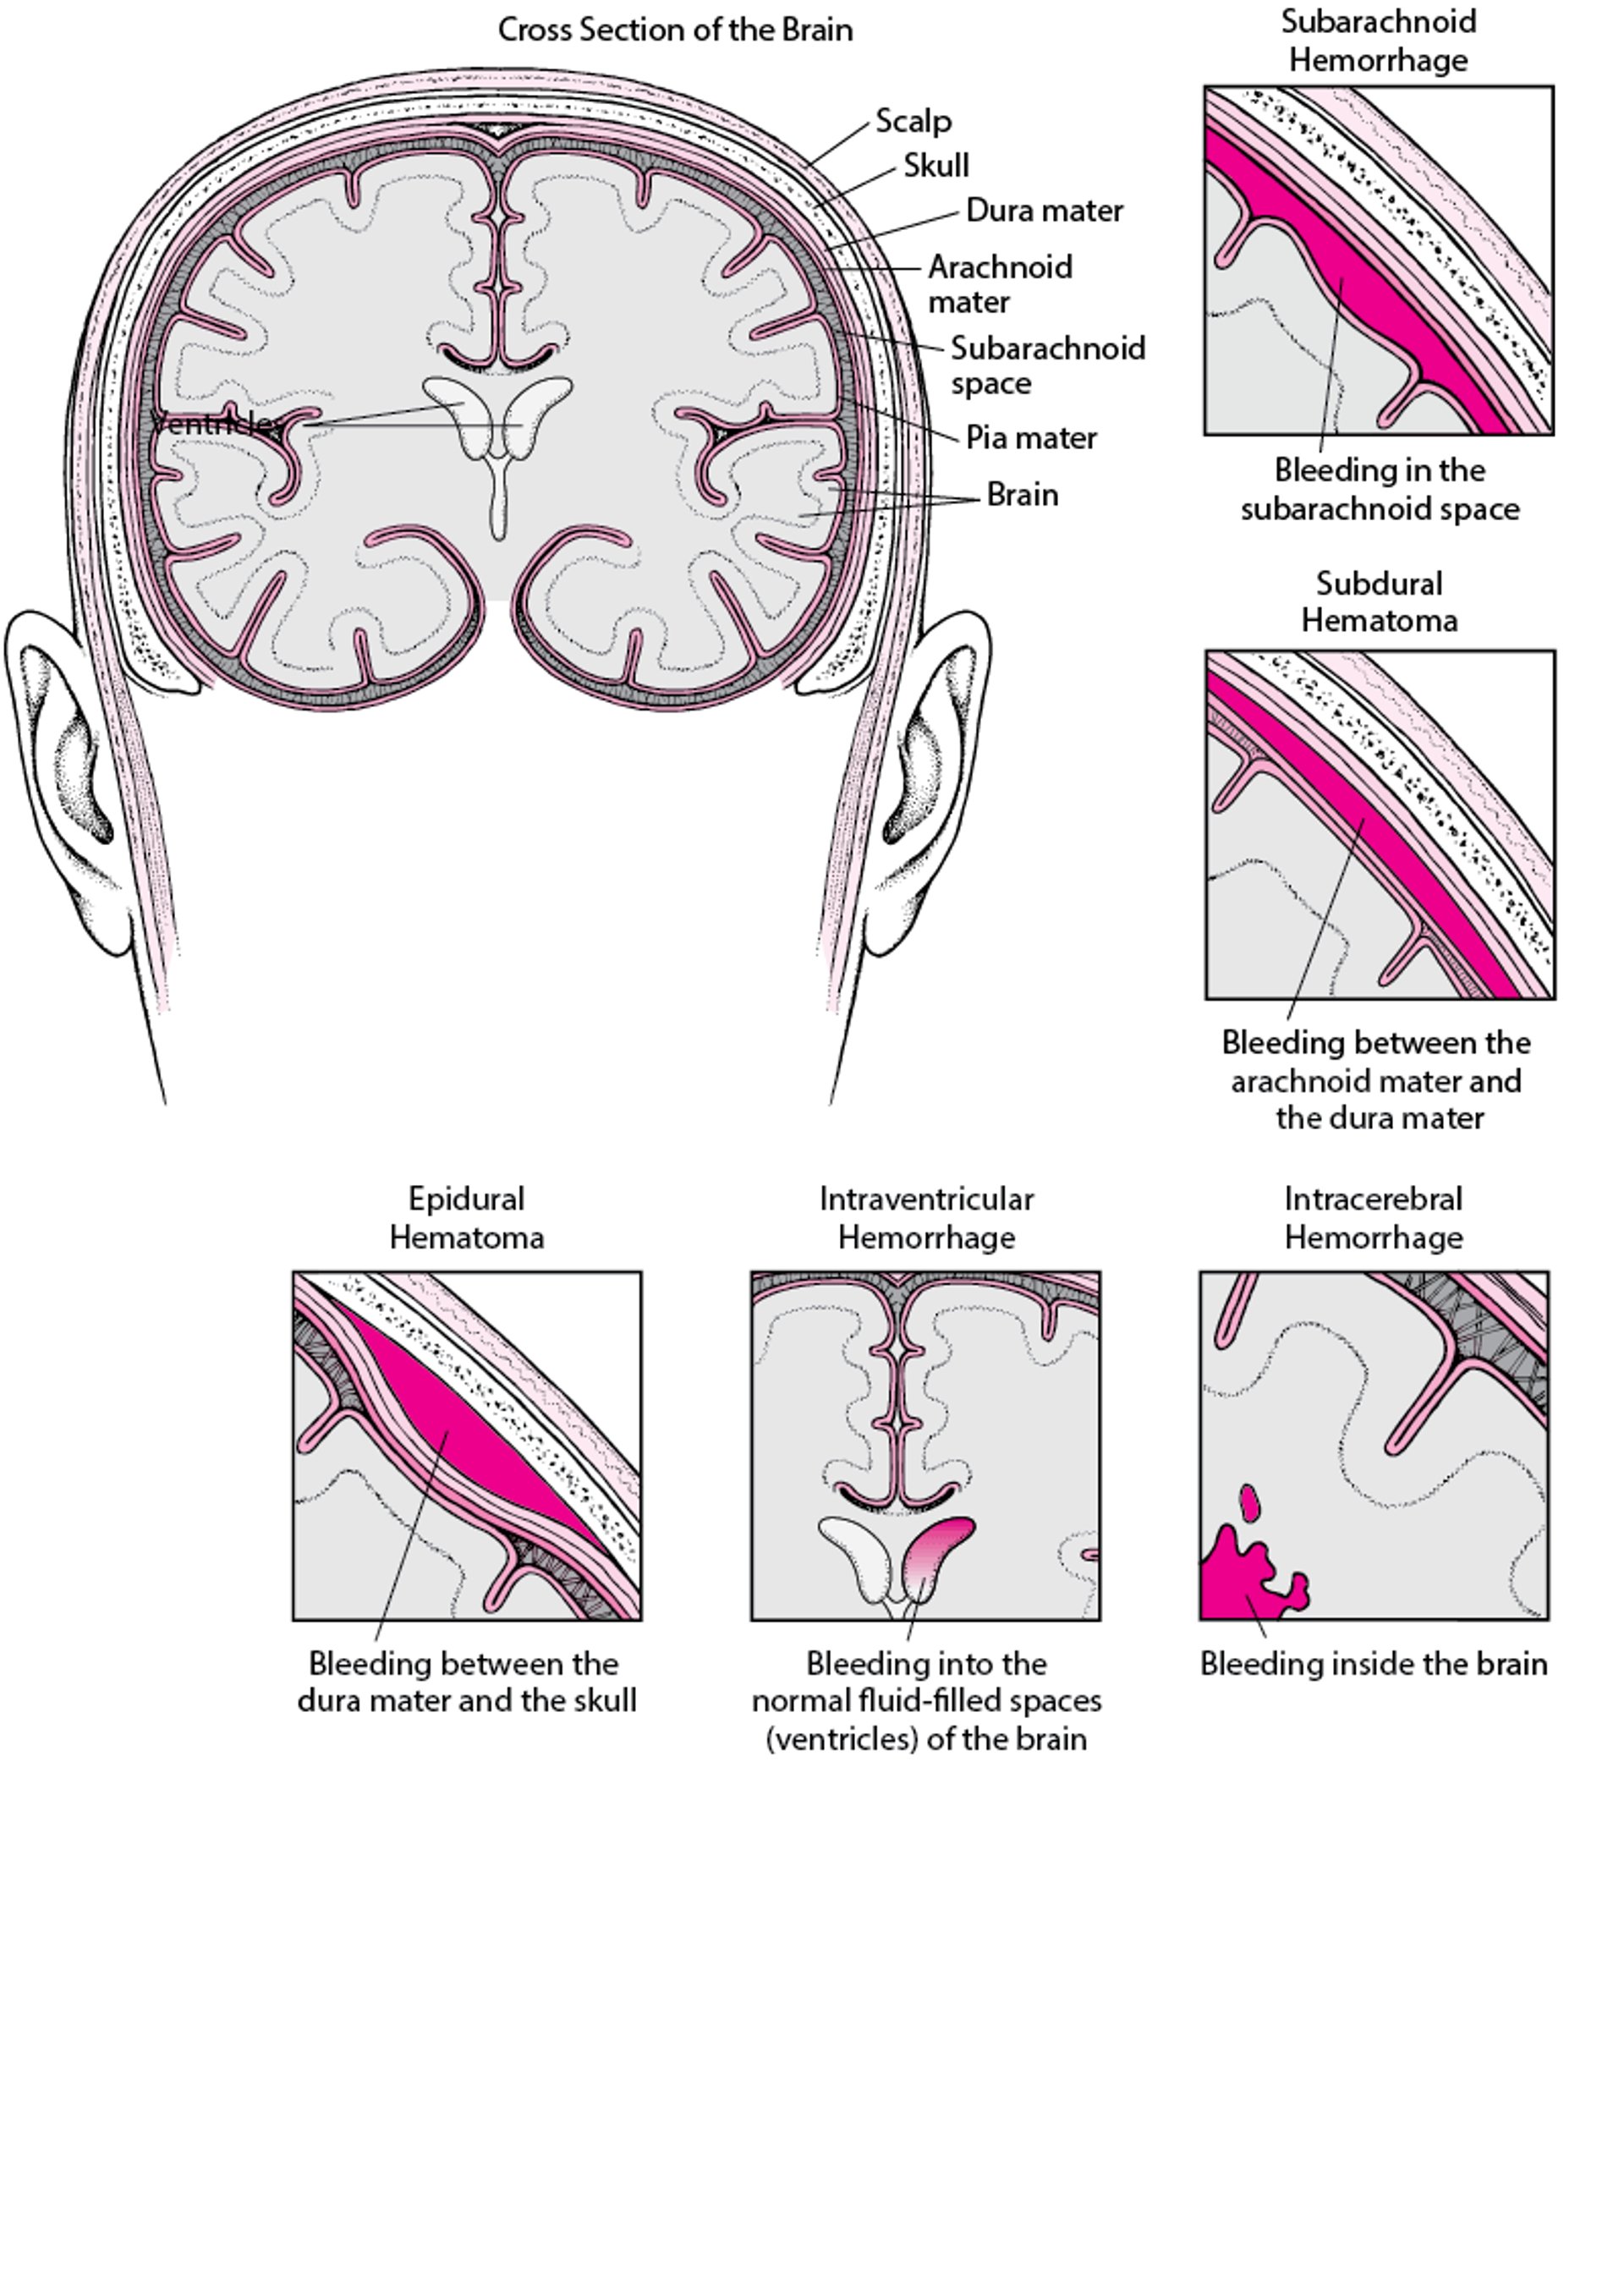 Hemorragia en el interior del cerebro y a su alrededor